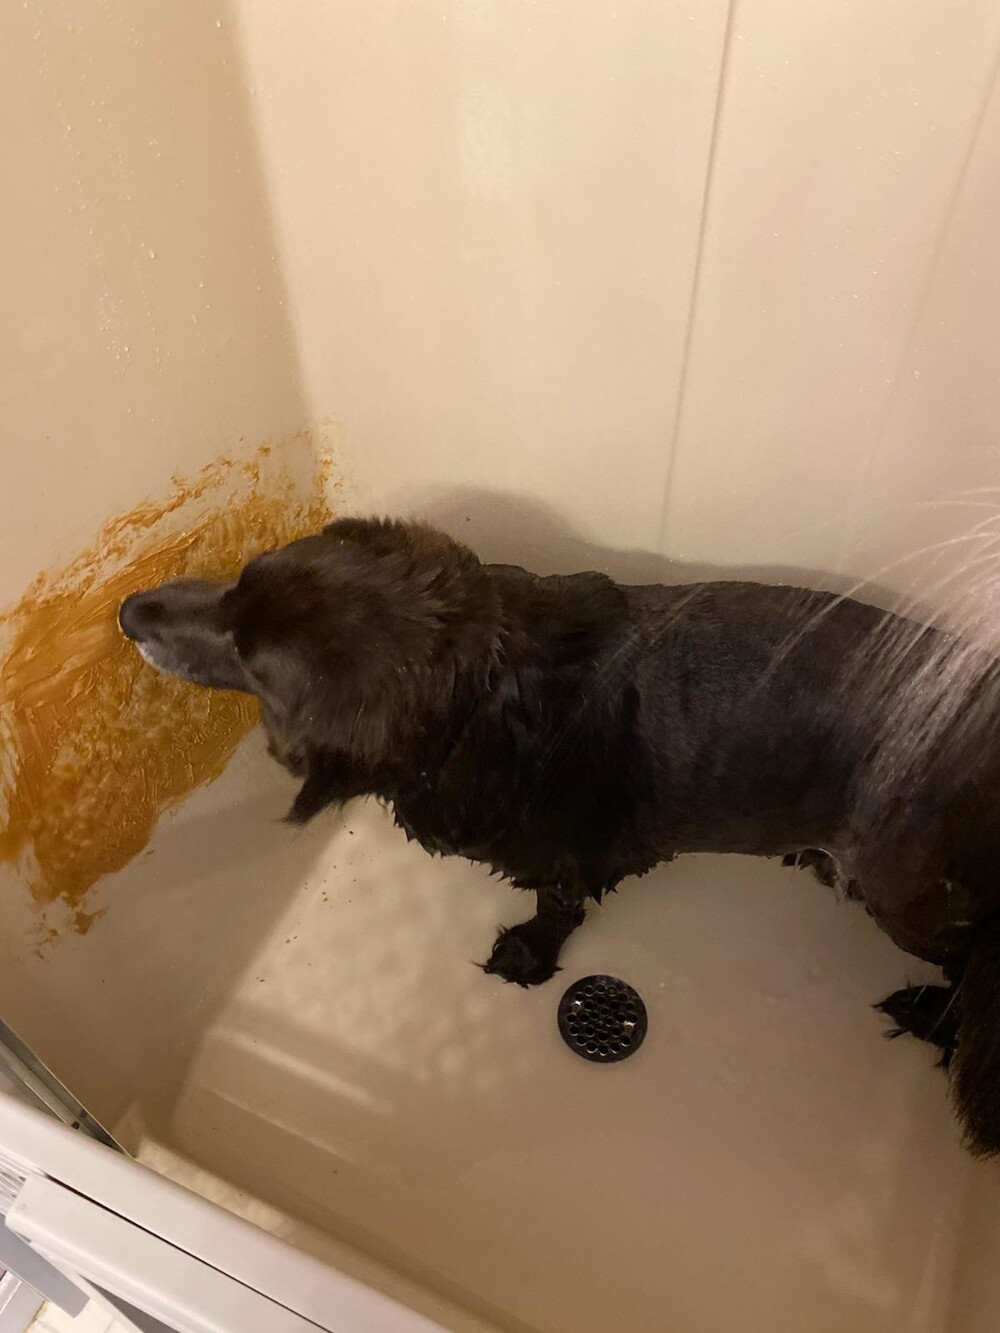 2. Мой брат использует арахисовое масло, чтобы собака не двигалась во время купания